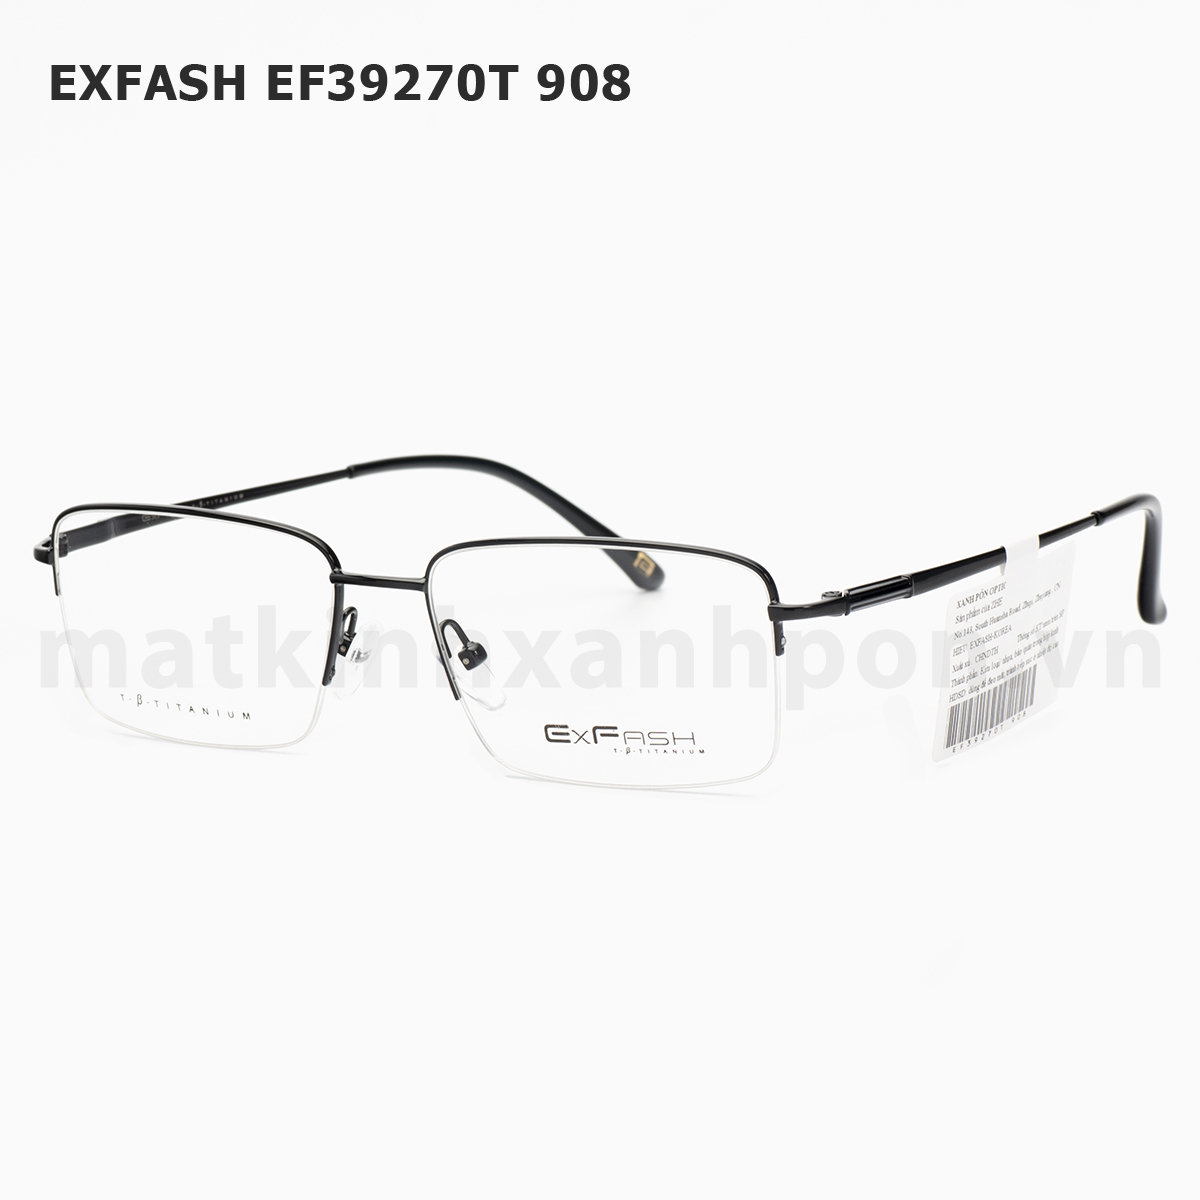 Exfash EF39270T 908